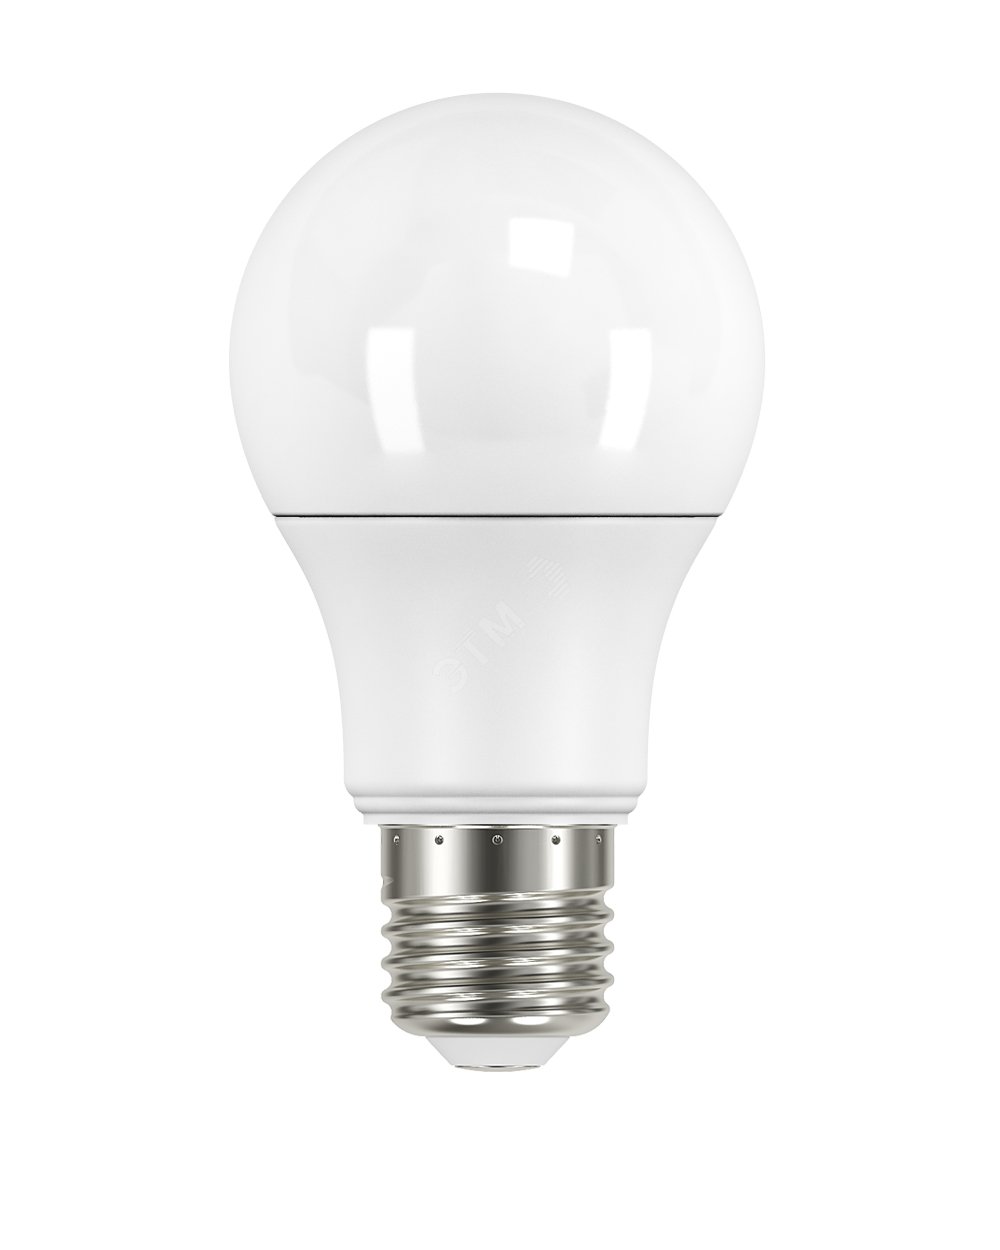 Низковольтная светодиодная лампа местного освещения (МО) LED 7Вт Е27 4000К 600Лм 12V AC/DC 902502270 Вартон